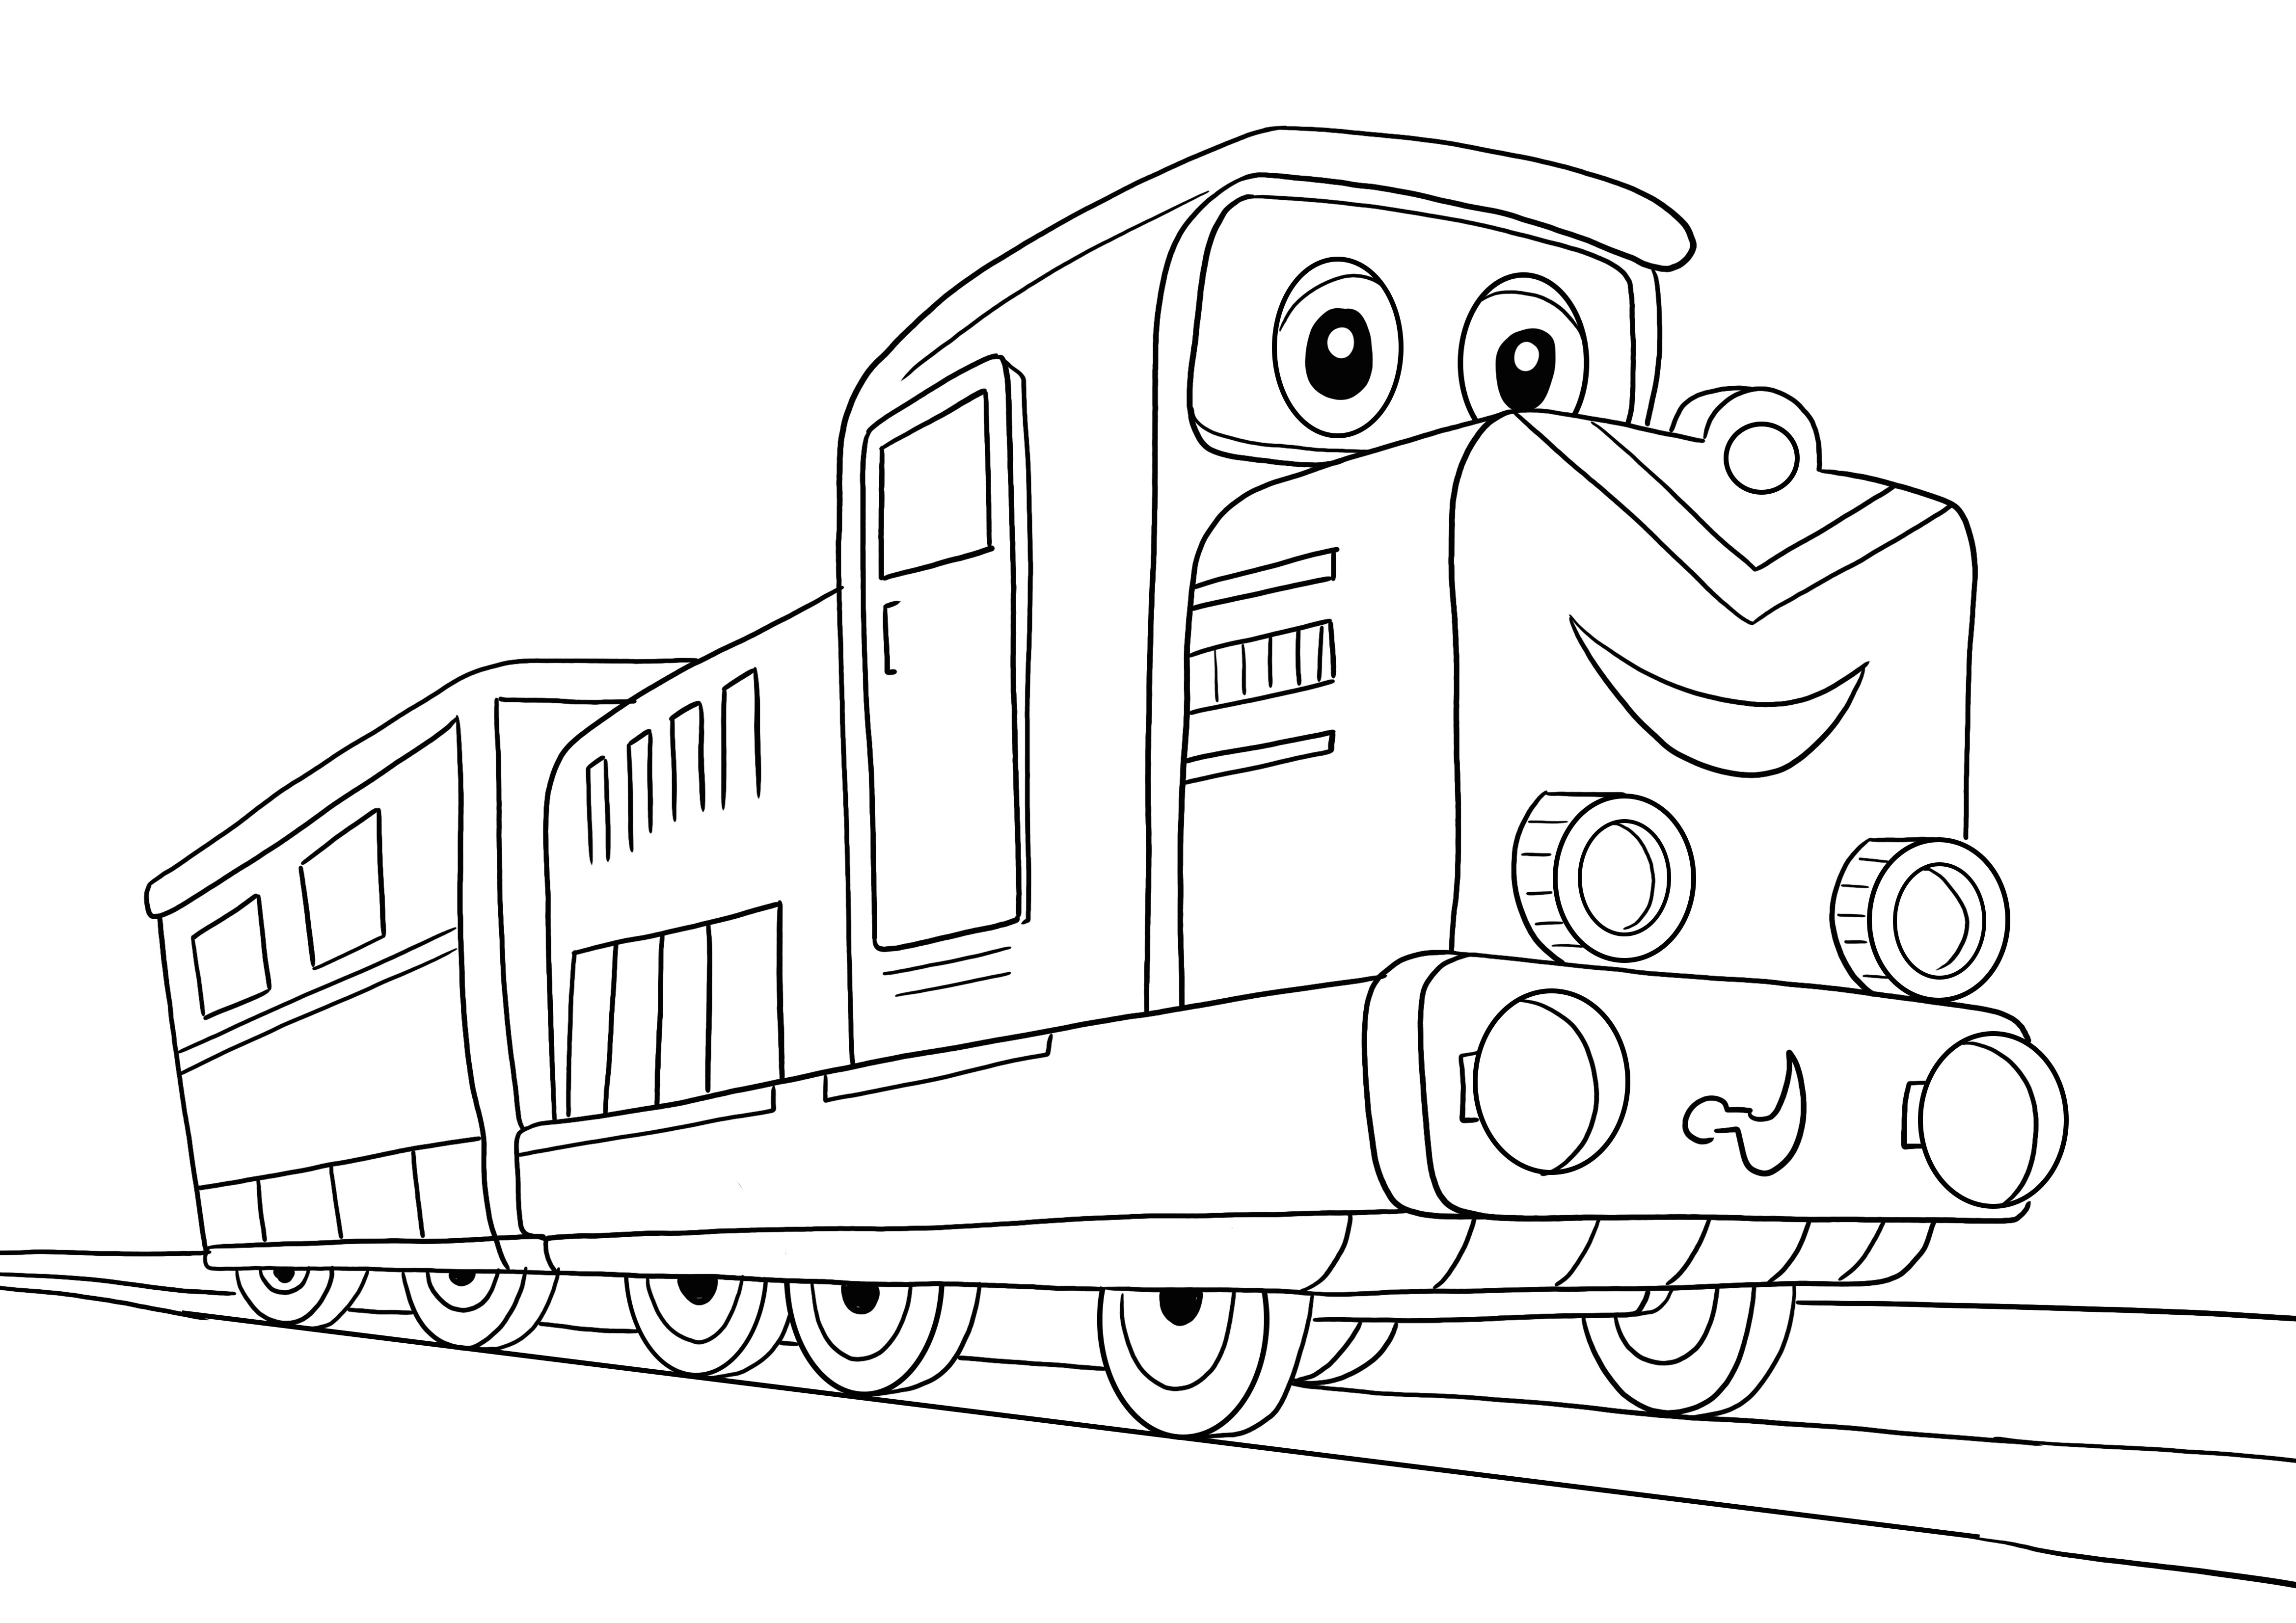 Oto nasz rysunek do kolorowania pociągu dla dzieci do nauki przez zabawę